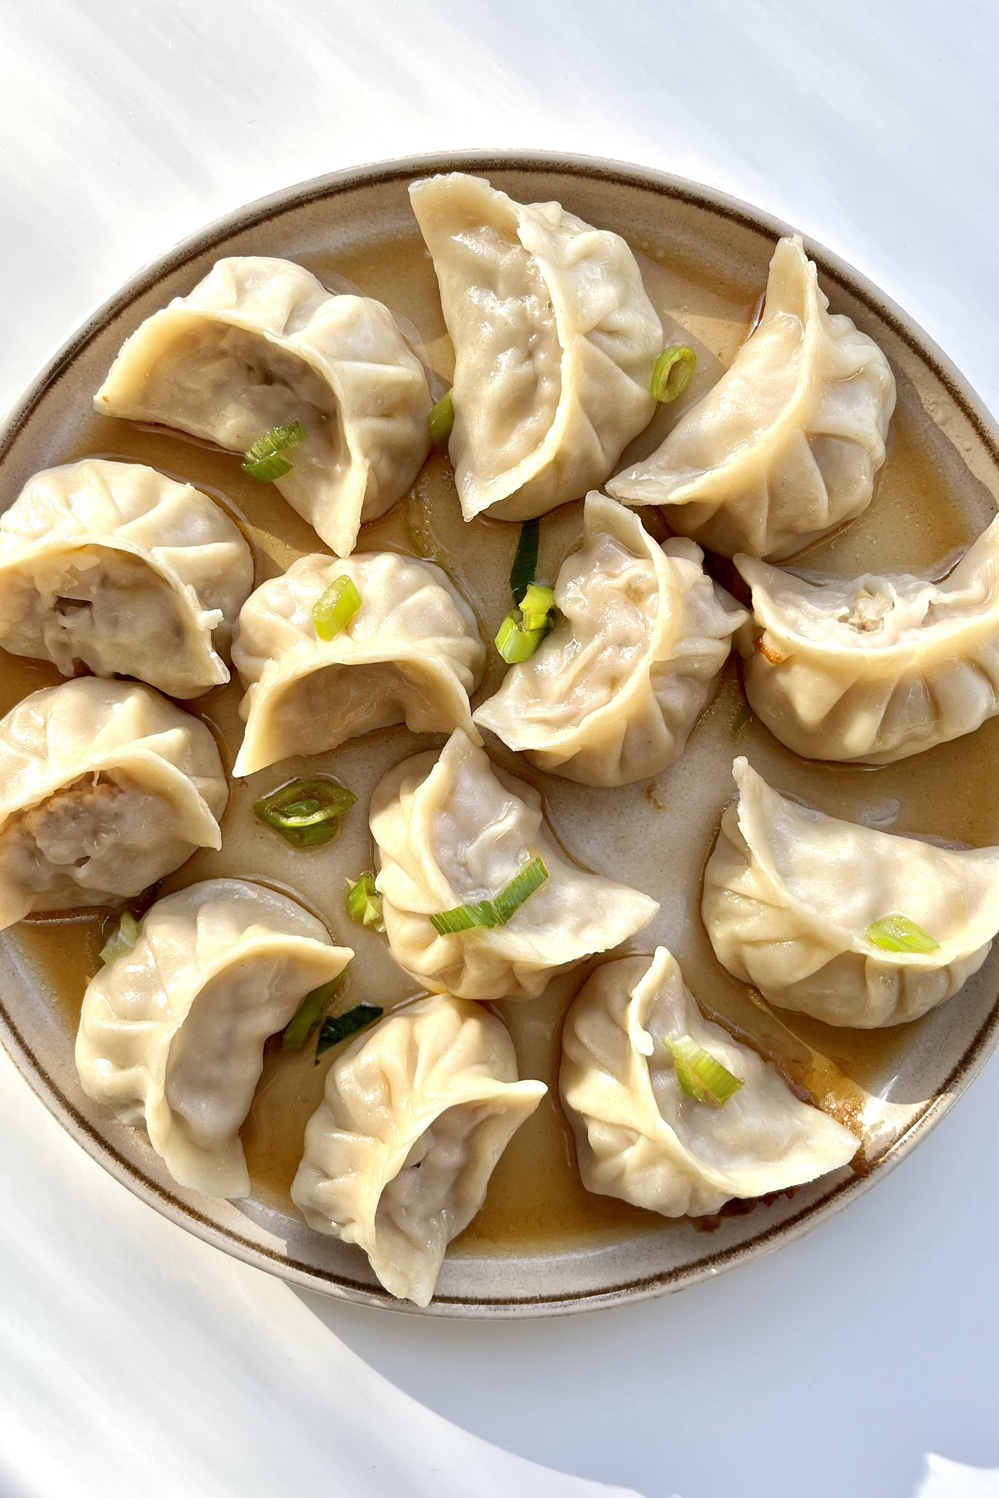 A plate of dumplings.